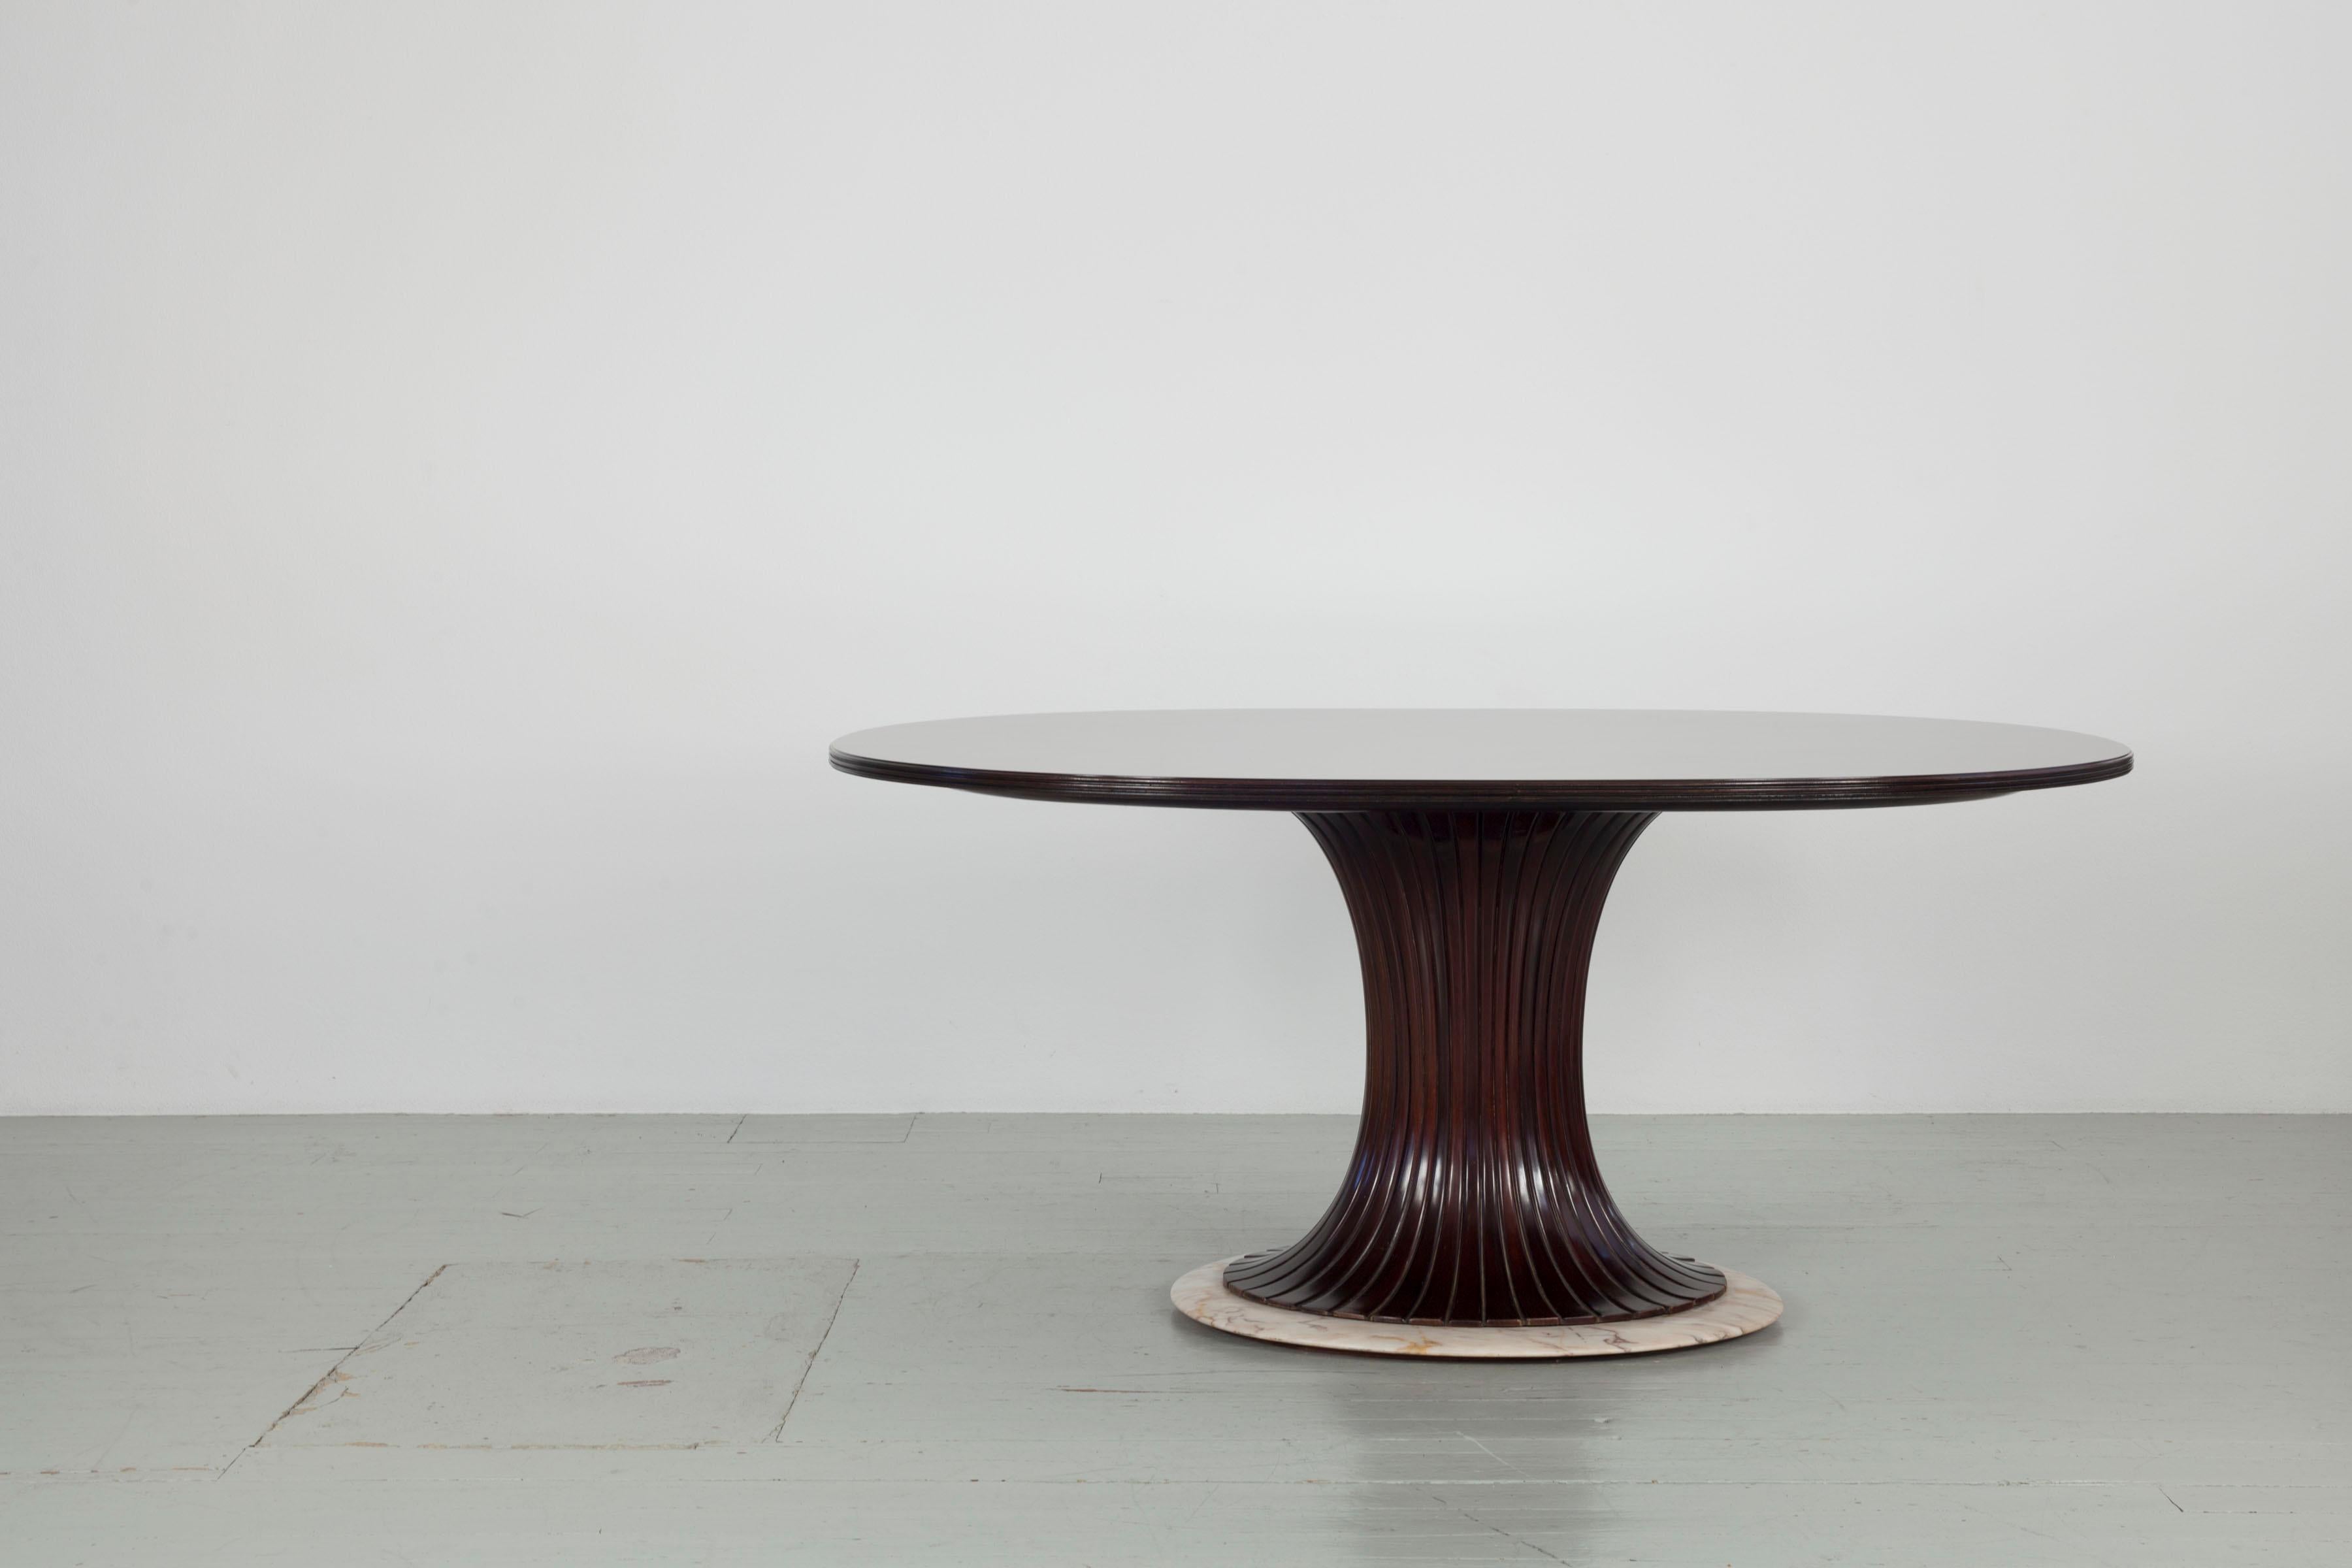 Cette table dans le style de Vittorio Dassi a été conçue dans les années 1950. Le plateau ovale en placage de bois de rose repose sur un pied central en forme de sablier en bois teinté brun foncé. L'ensemble de la table est fixé à une base en marbre